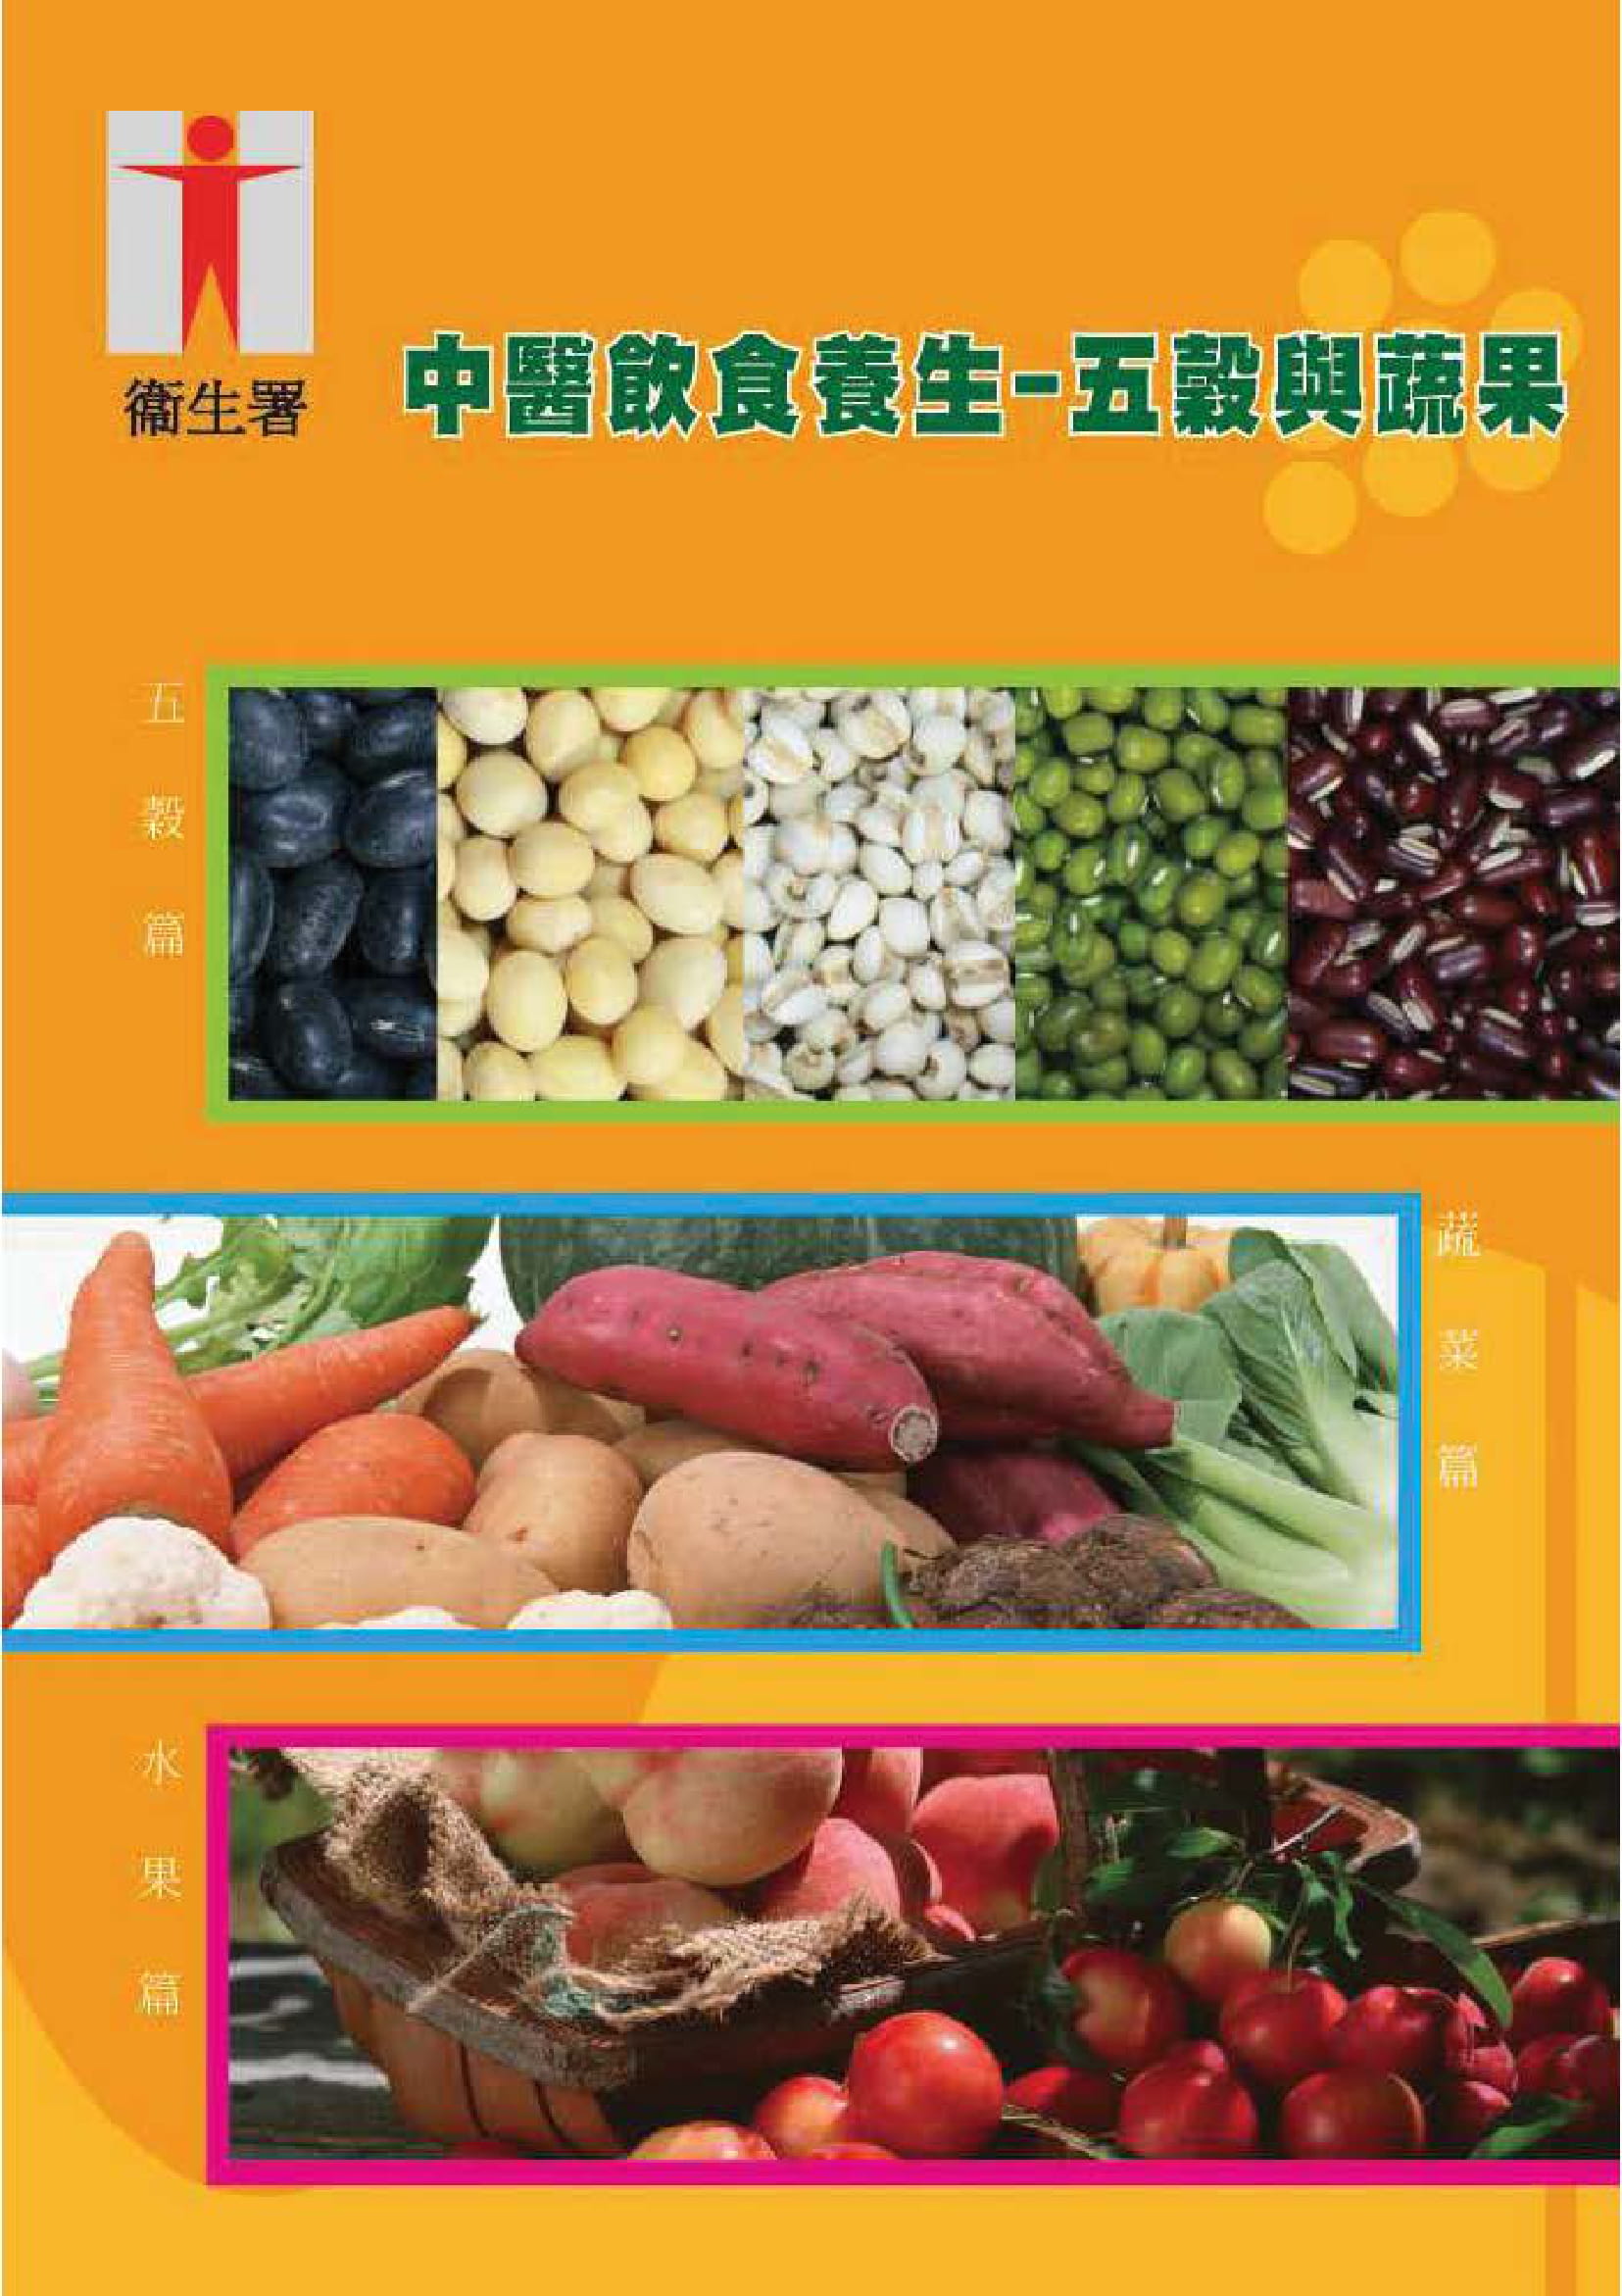 中醫飲食養生 –五穀與蔬果(刊物)